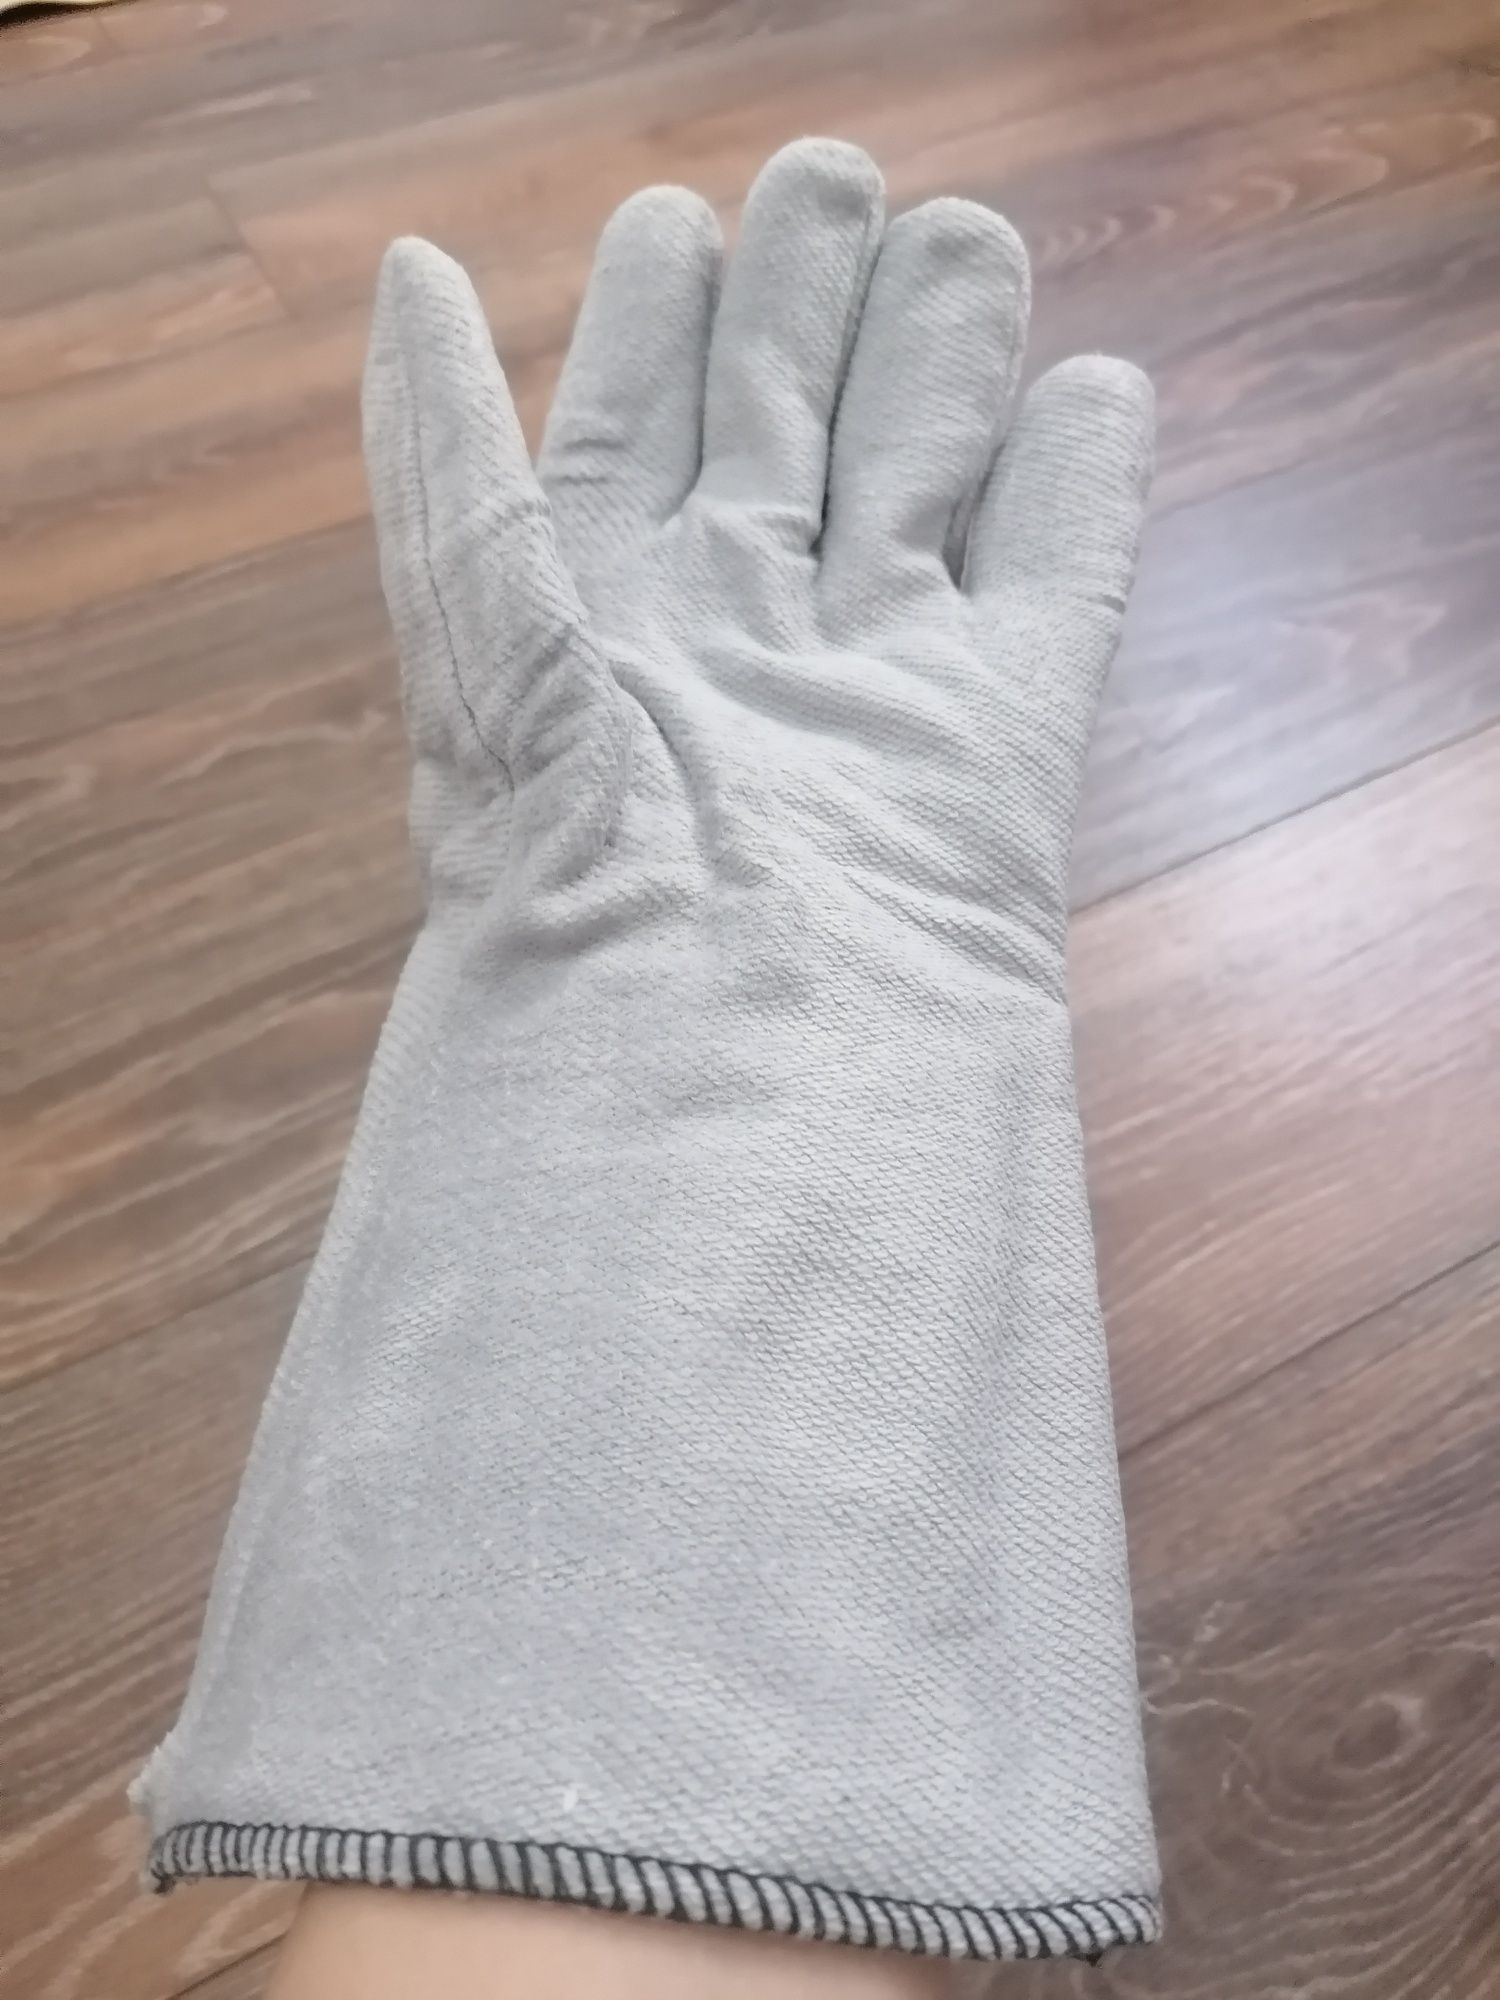 Mănuși pentru protecția muncii